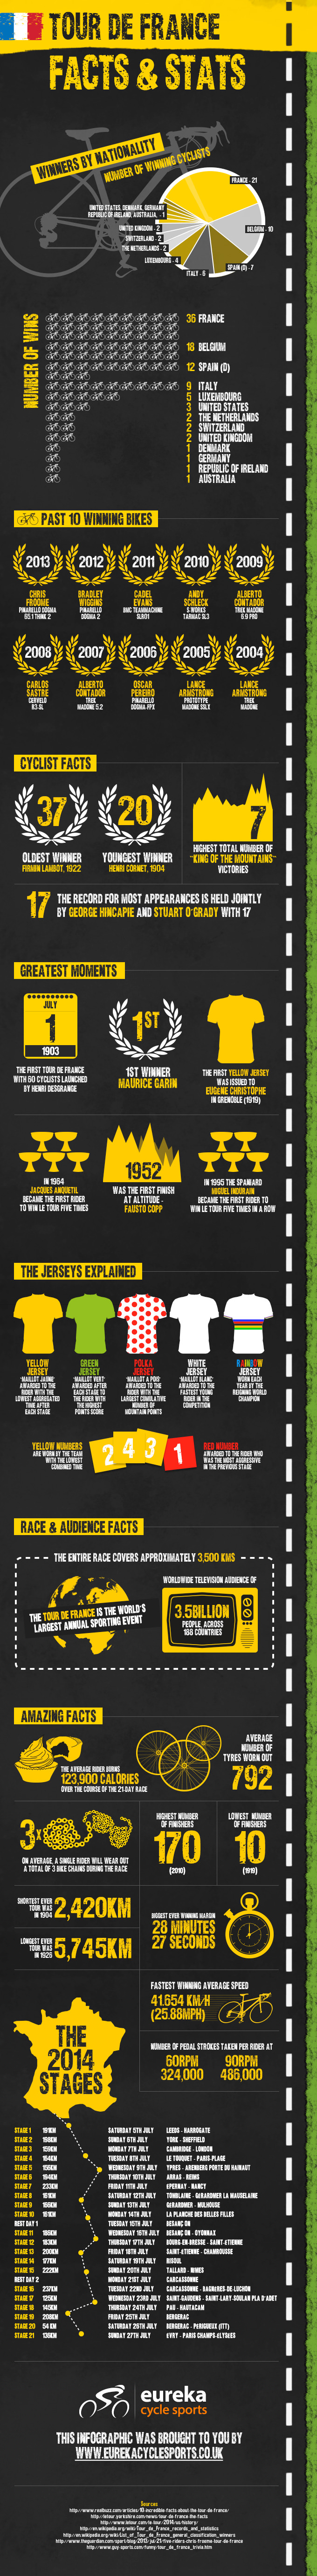 Tour De France Facts and Stats